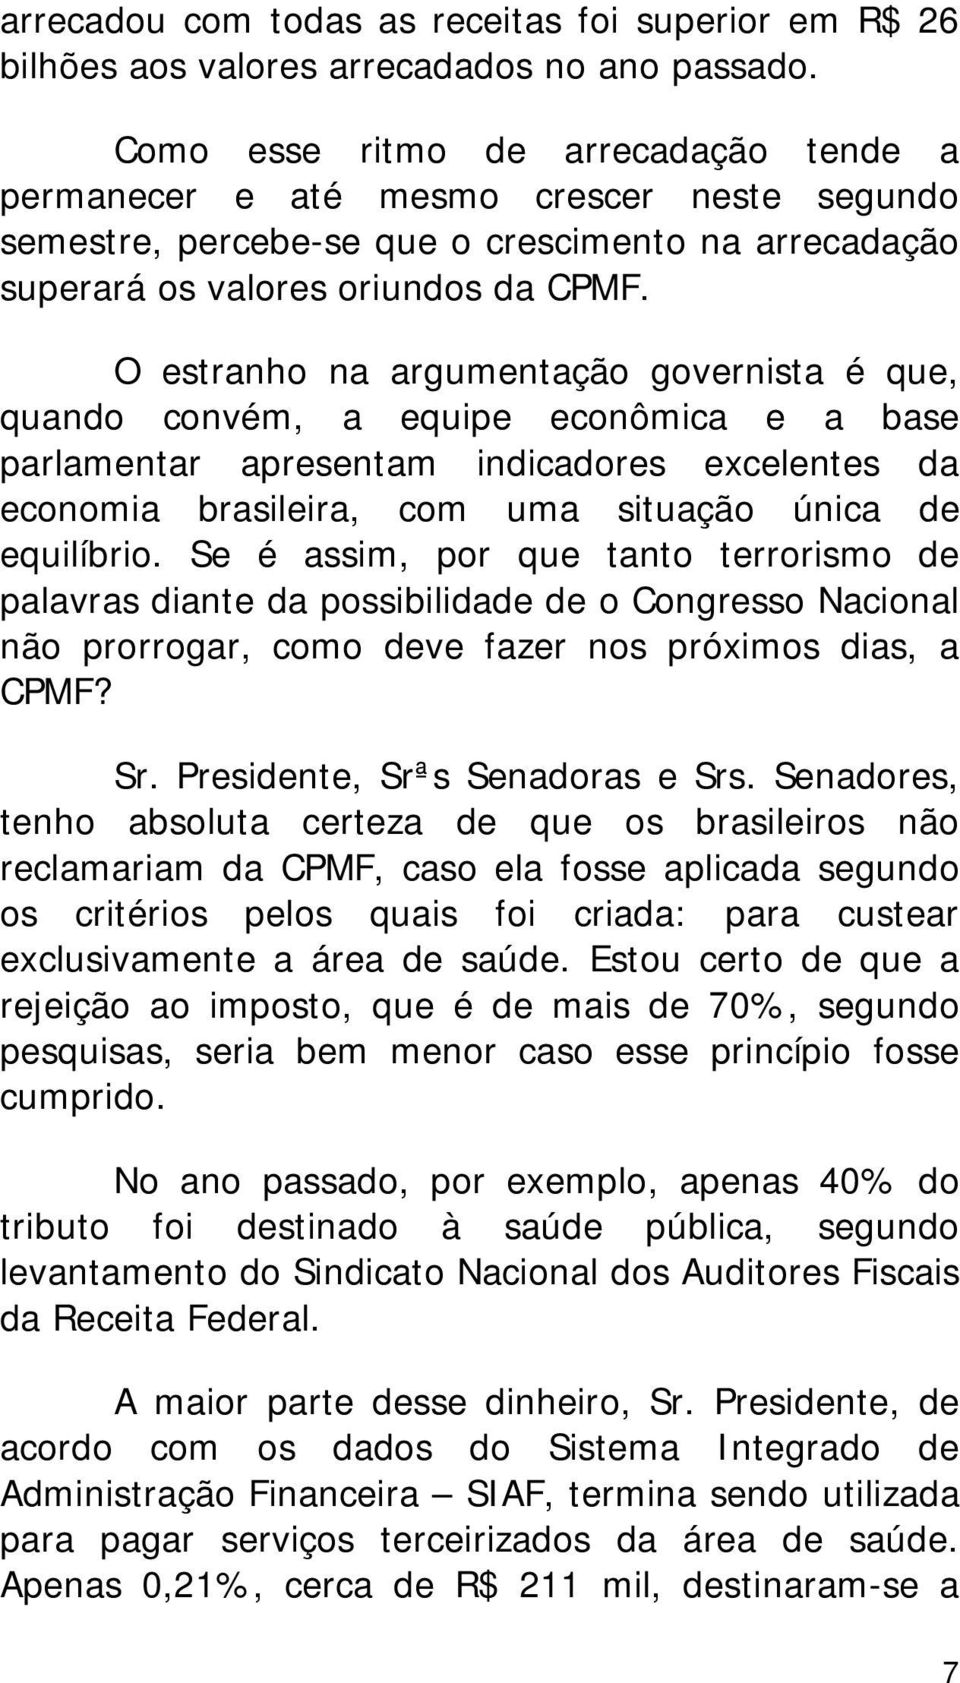 O estranho na argumentação governista é que, quando convém, a equipe econômica e a base parlamentar apresentam indicadores excelentes da economia brasileira, com uma situação única de equilíbrio.